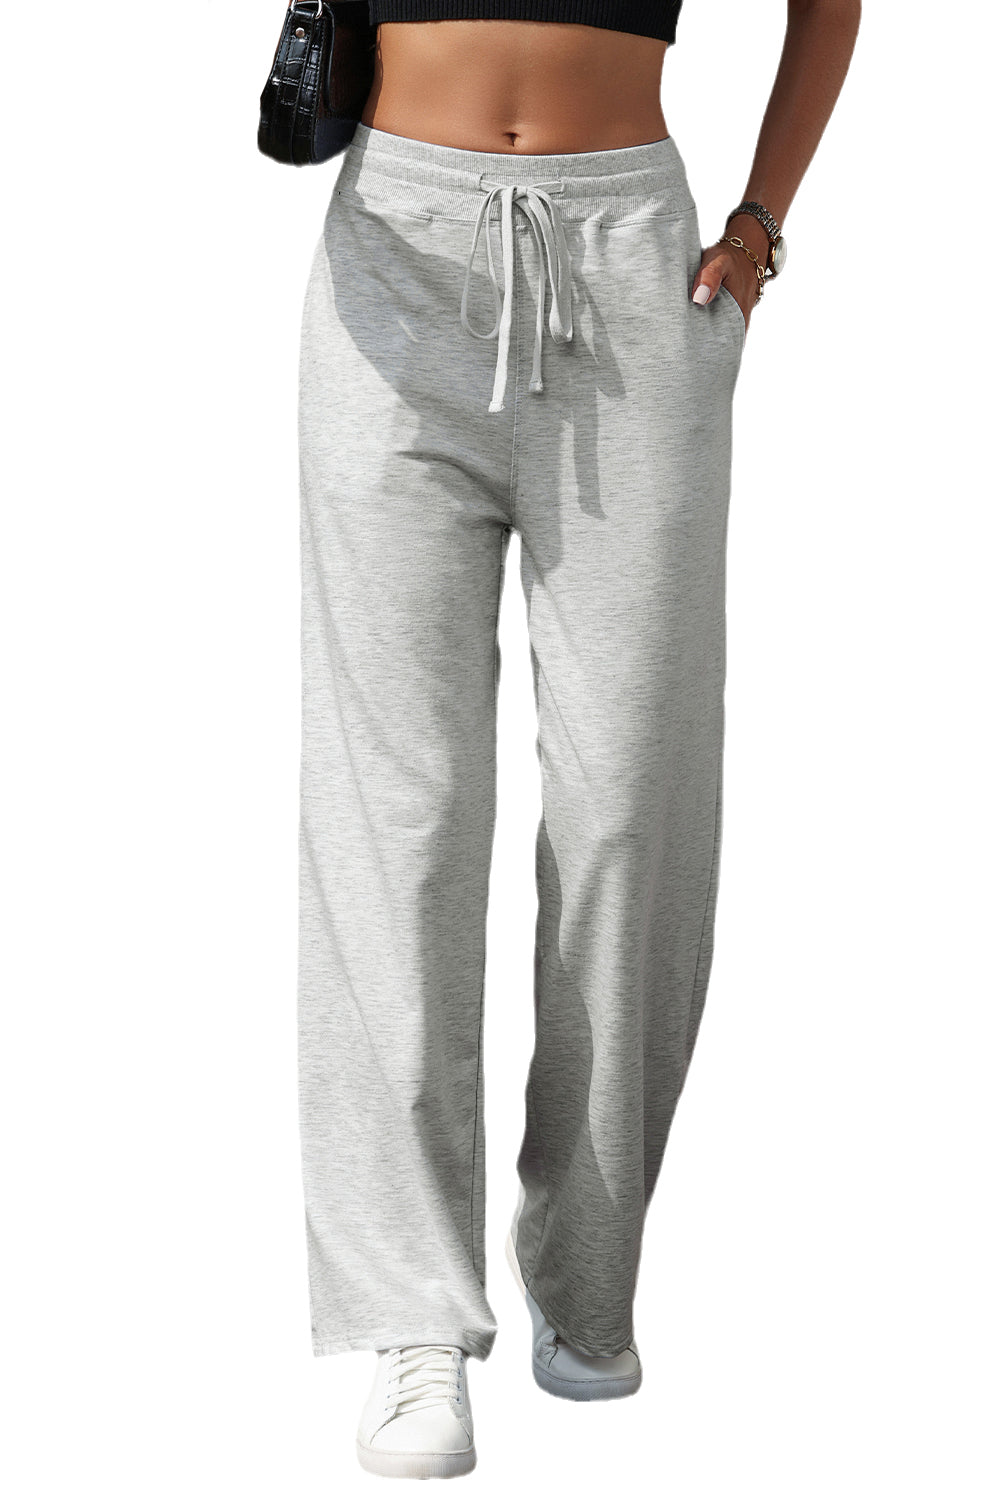 Pantalon de survêtement taille haute gris clair avec cordon de serrage